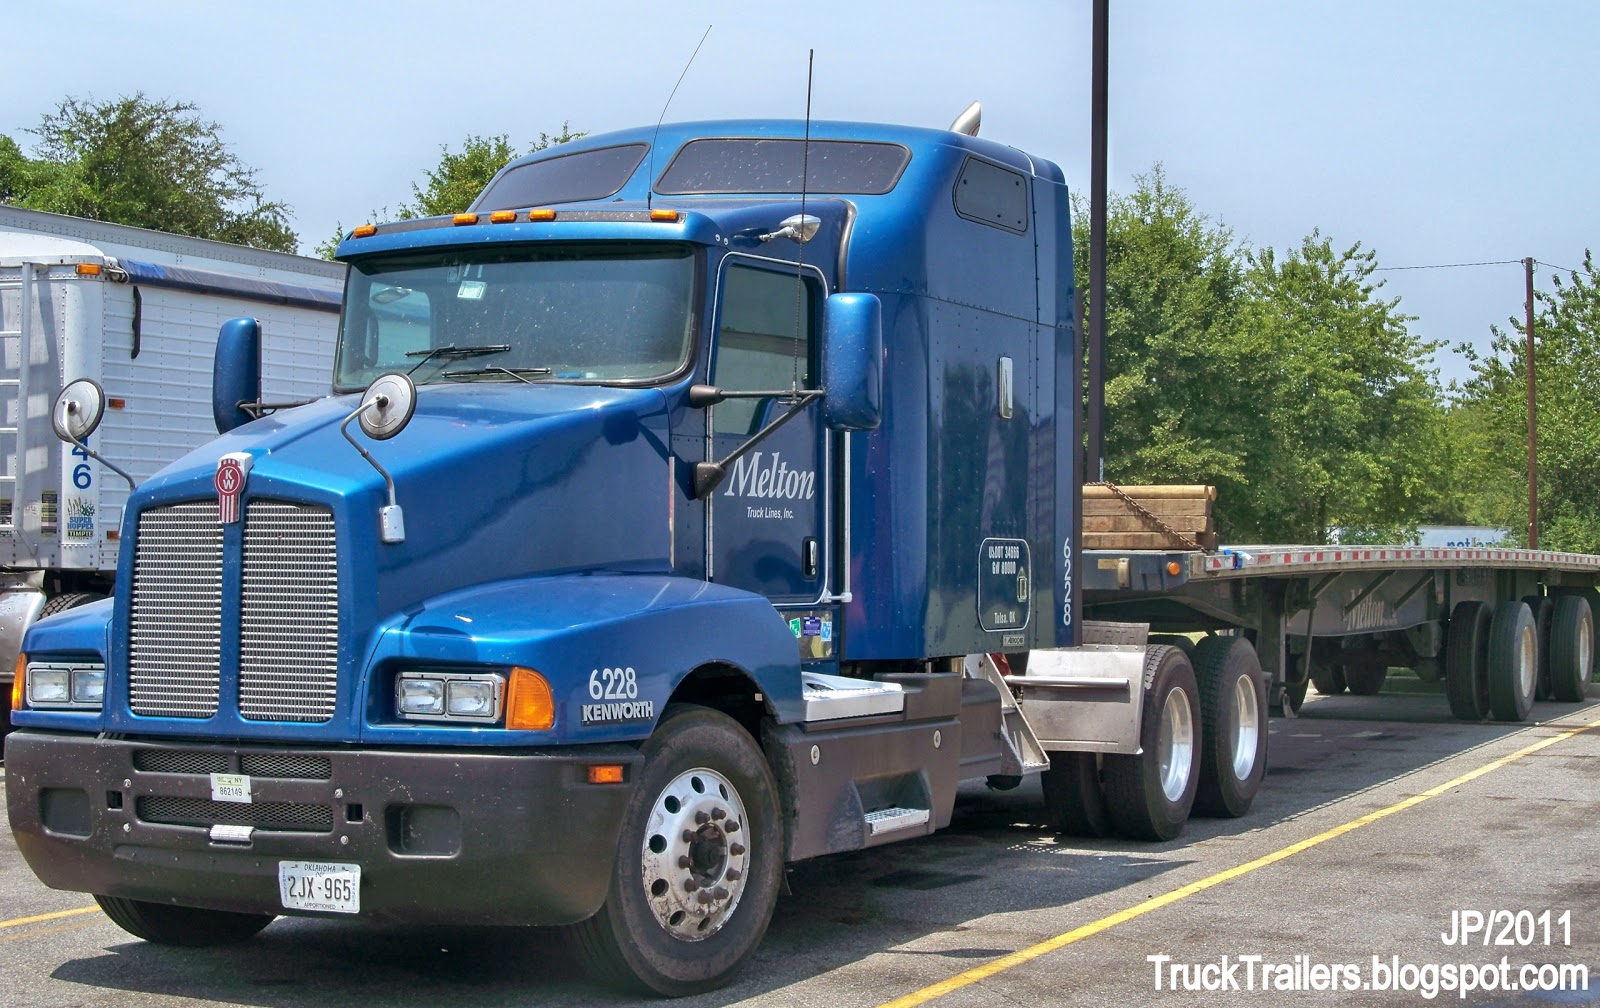 Truck Trailer Transport Express Freight Logistic Diesel Mack Peterbilt